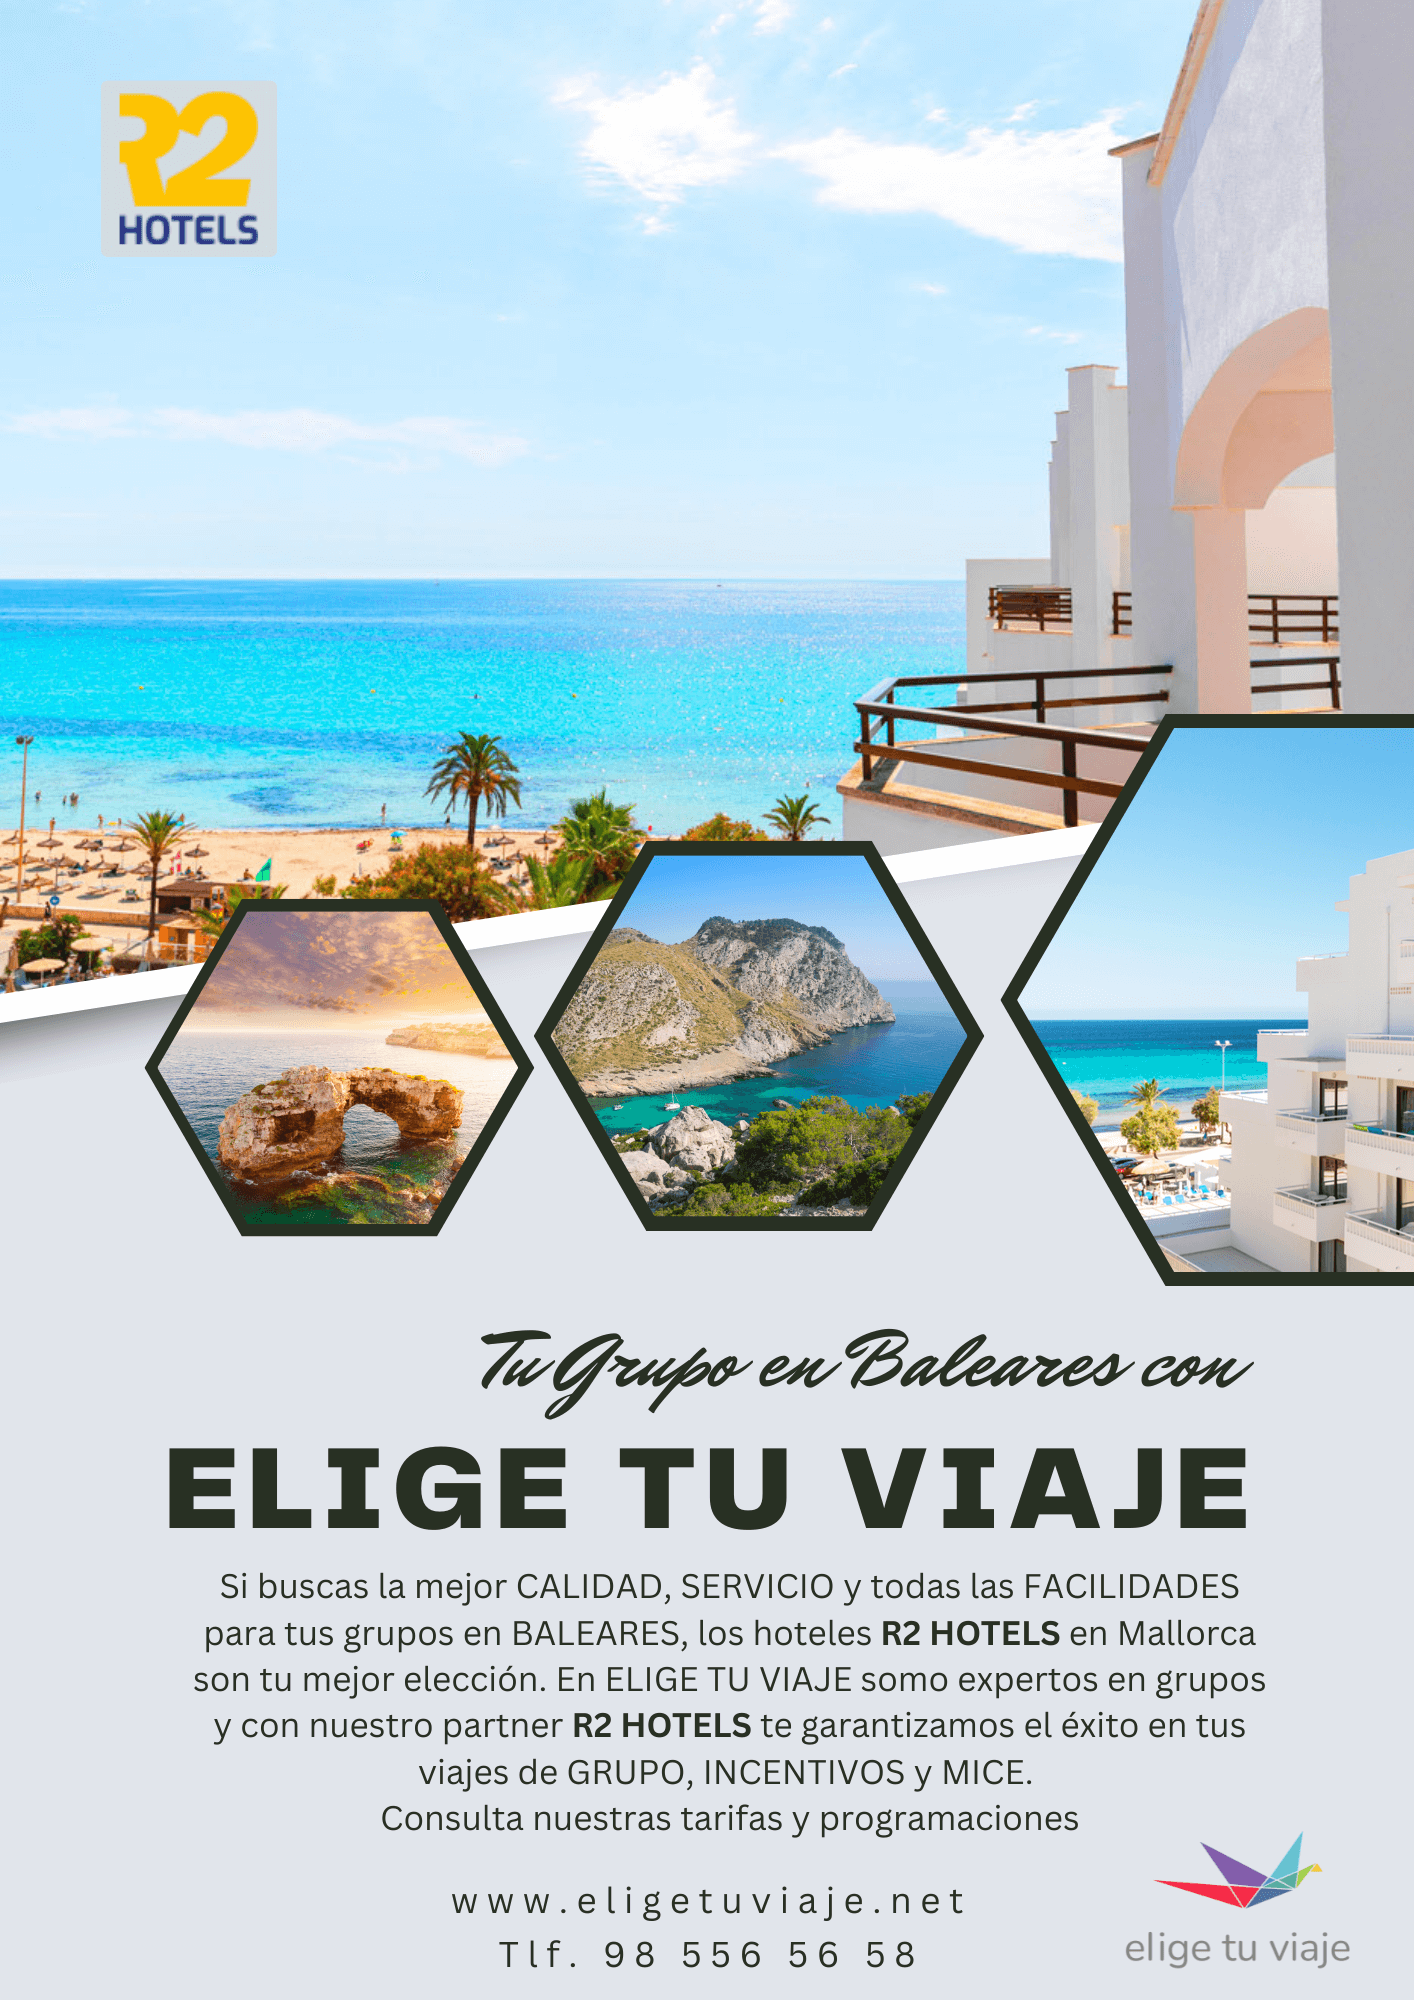 ELIGE Tus Grupos en Baleares, R2 Hotels, con Agencia de Viajes Elige tu Viaje